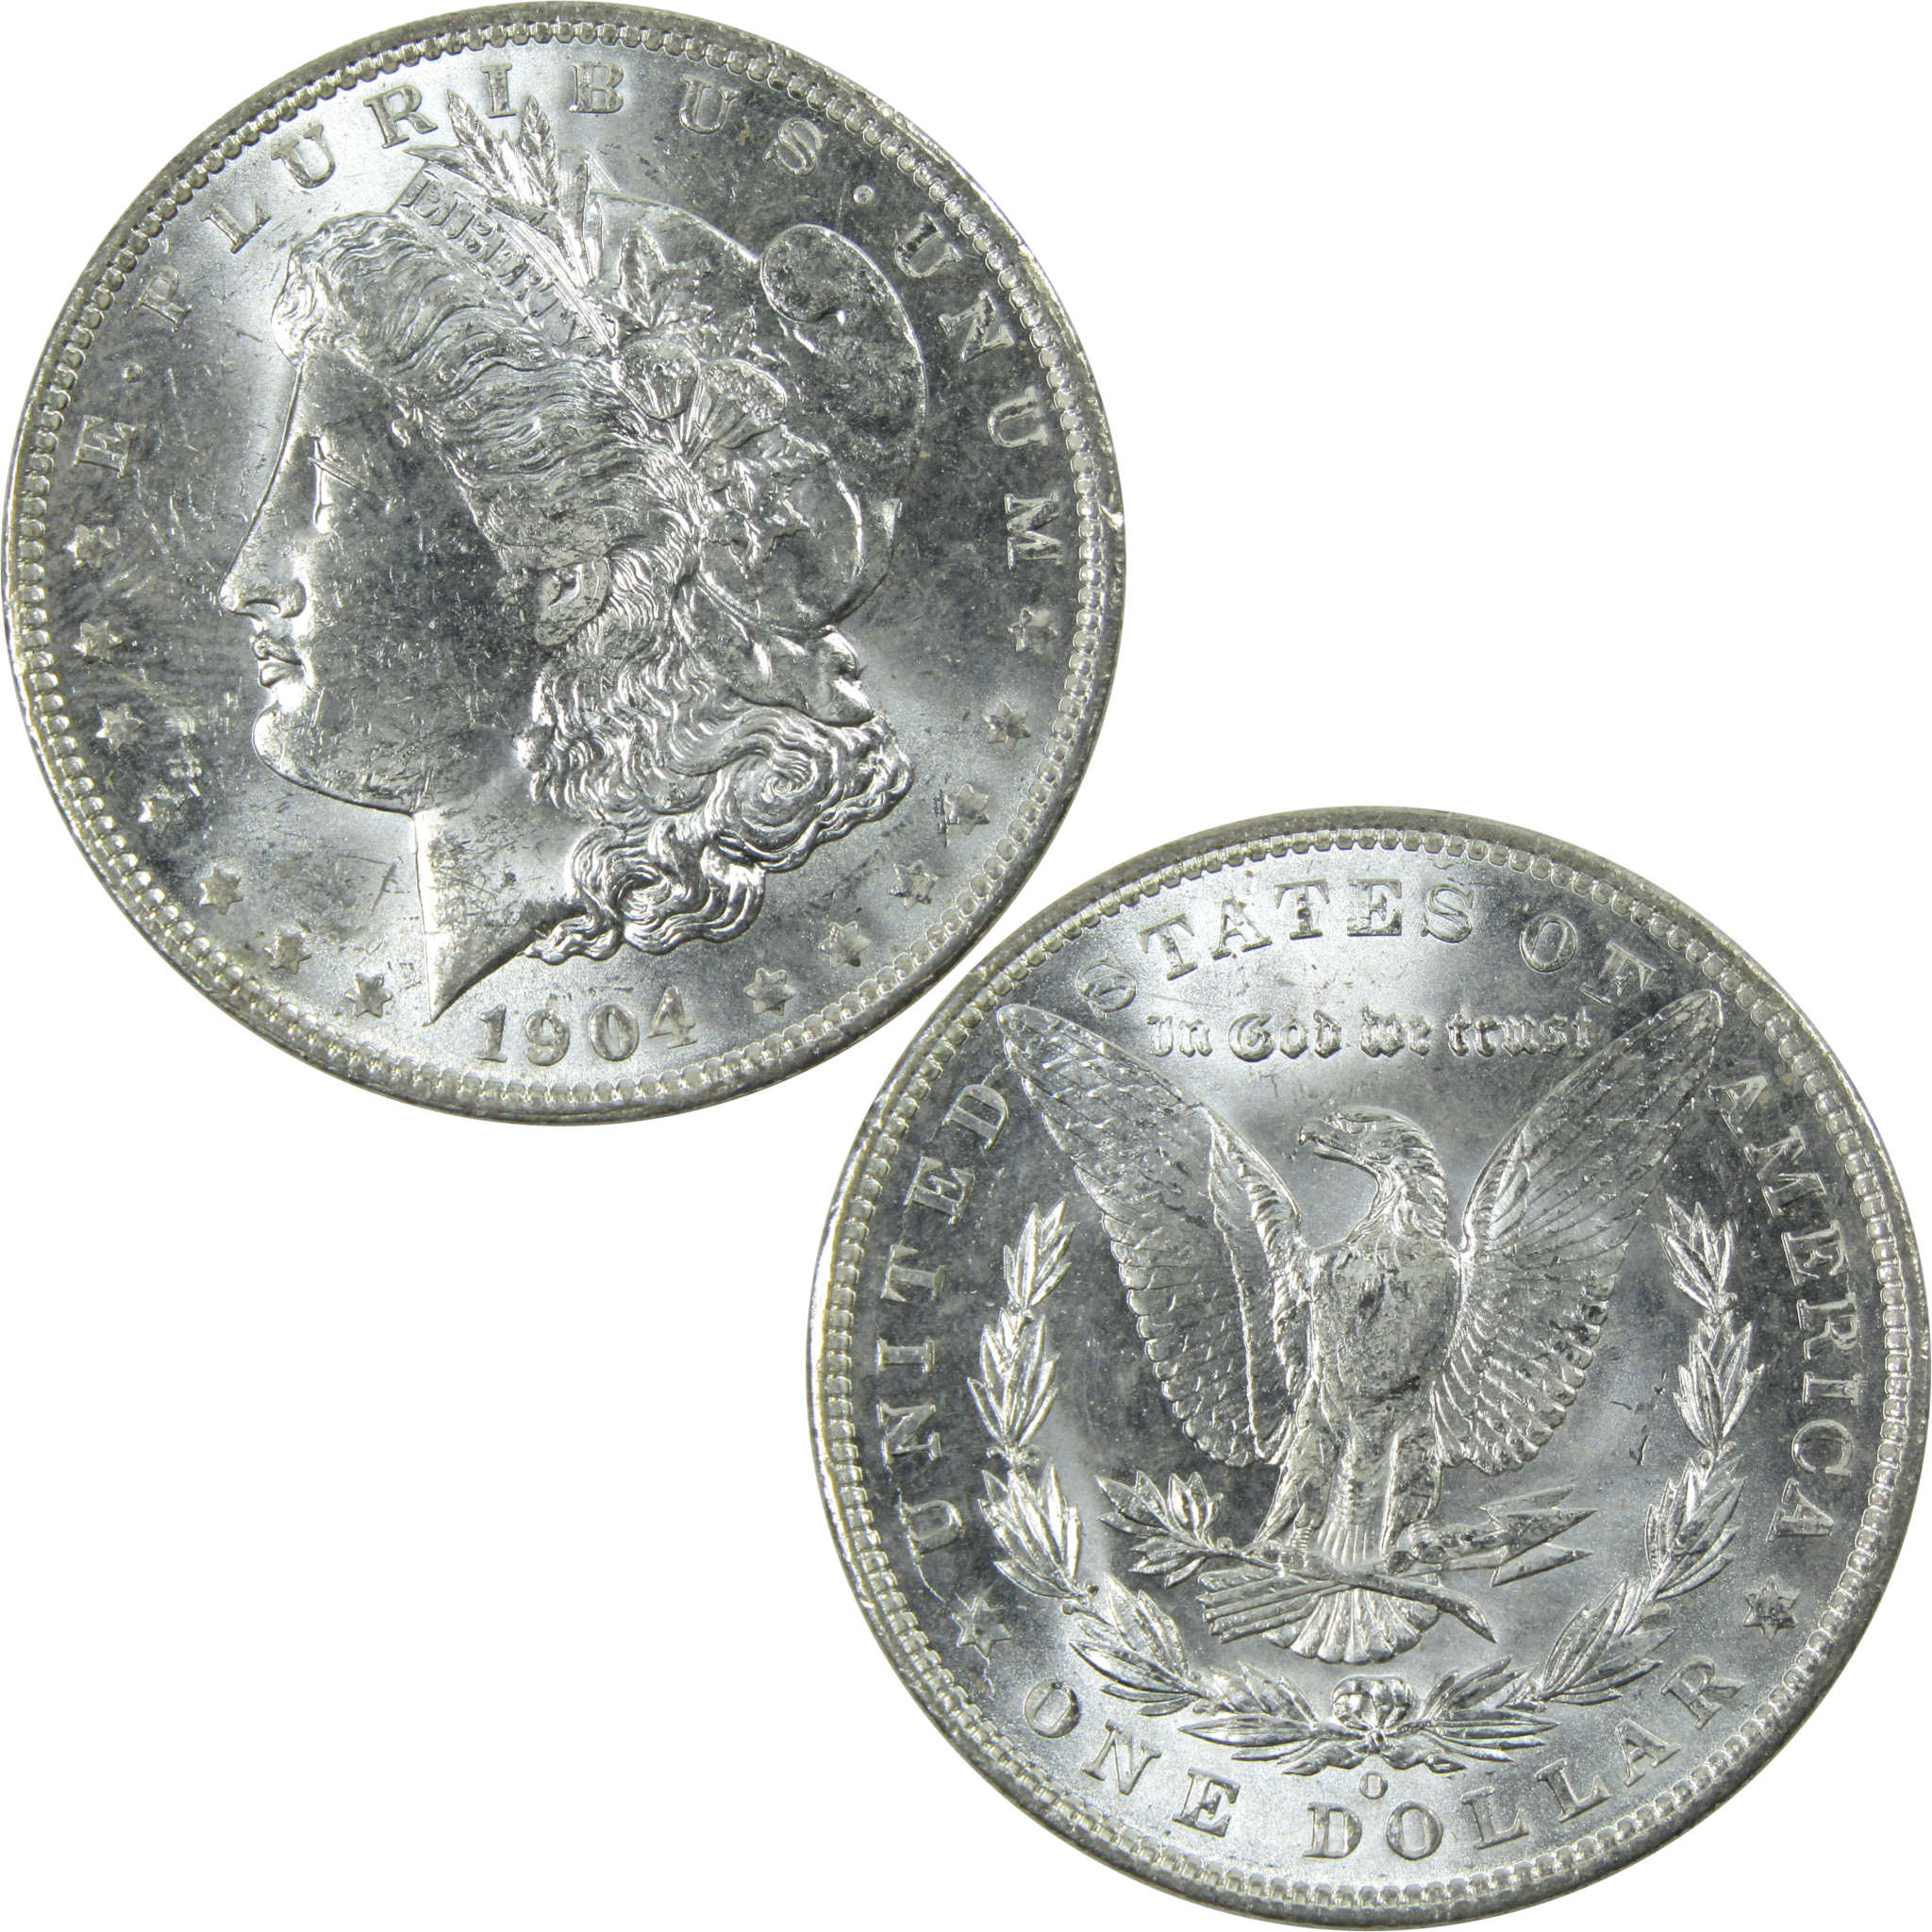 1904 O Morgan Dollar Uncirculated Silver $1 Coin SKU:I13740 - Morgan coin - Morgan silver dollar - Morgan silver dollar for sale - Profile Coins &amp; Collectibles